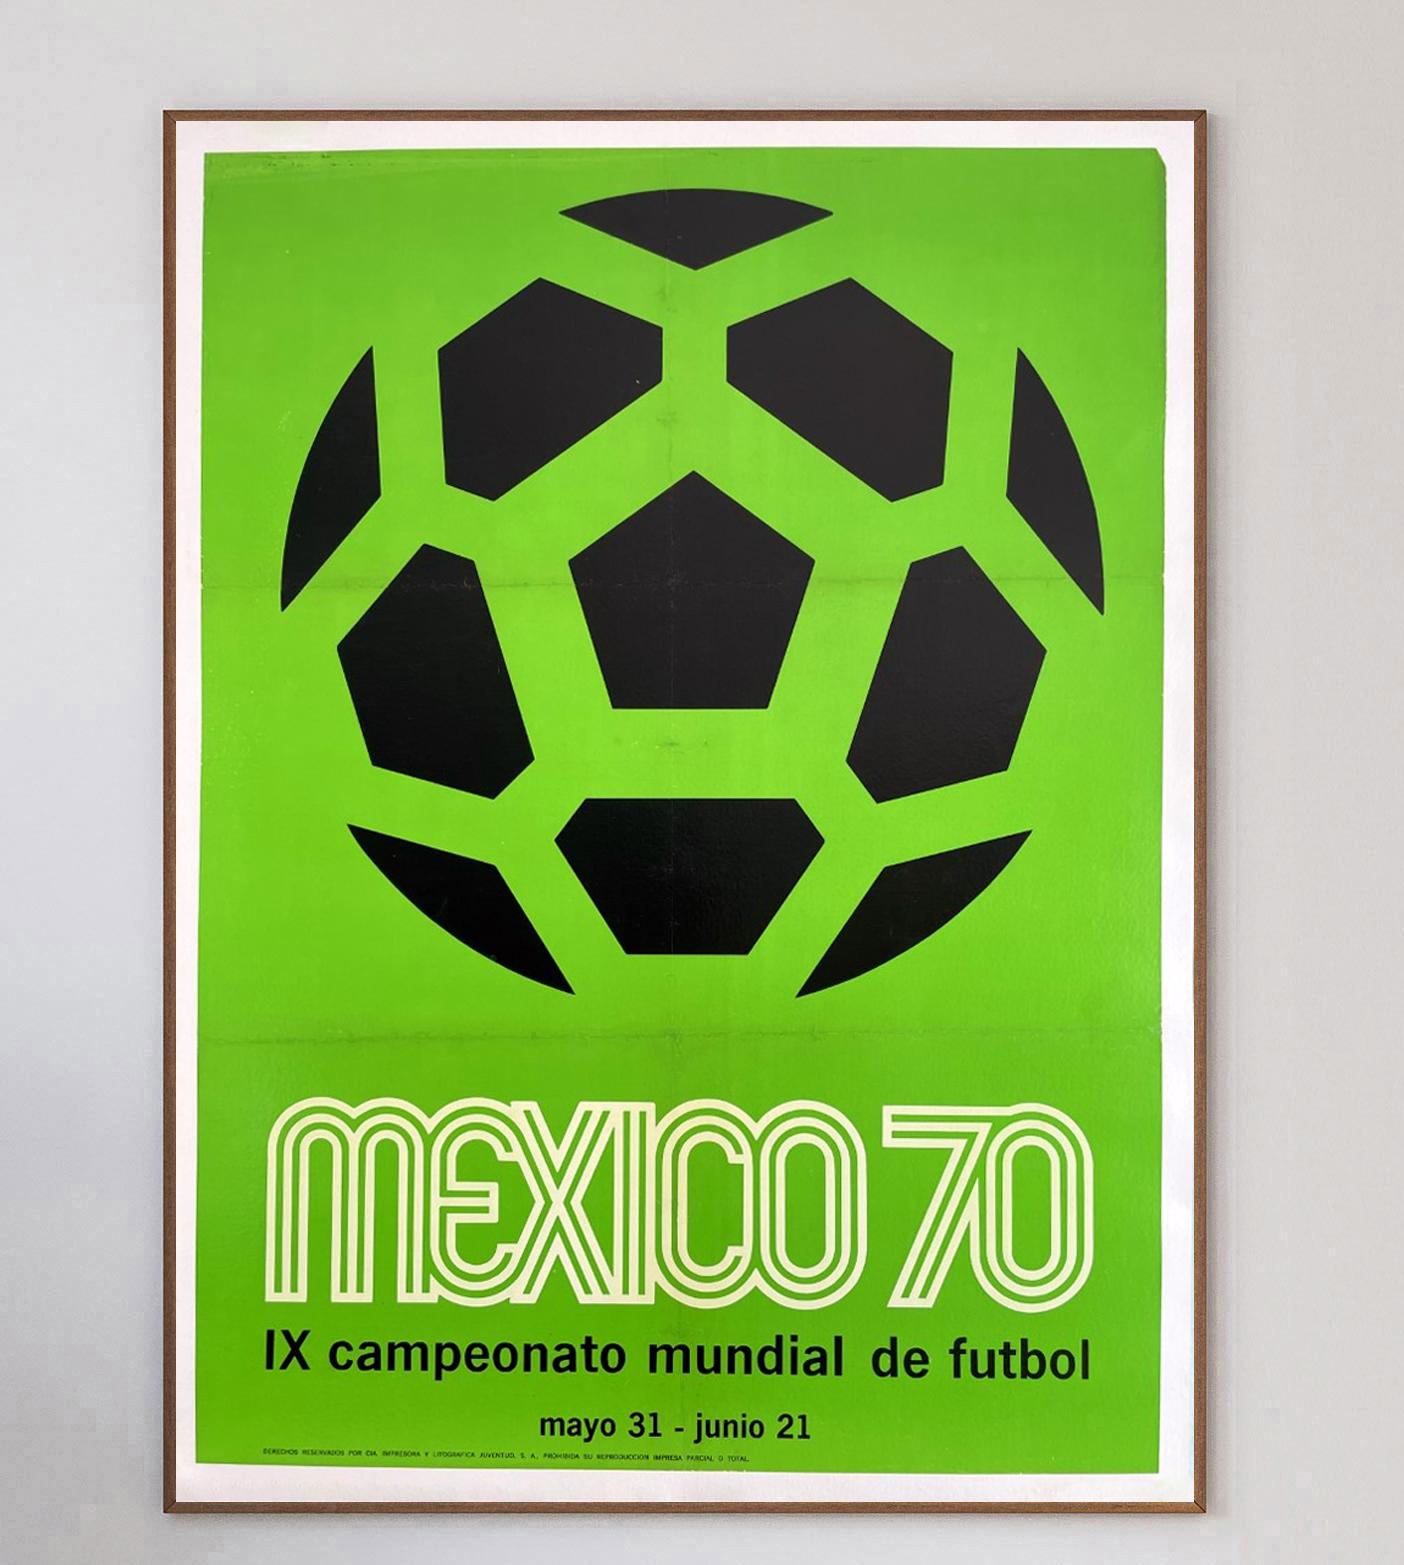 Die FIFA Fussball-Weltmeisterschaft 1970 wurde vom 31. Mai bis 21. Juni in Mexiko ausgetragen und war die 9. Es war die erste Veranstaltung, die in Nordamerika stattfand, und sie war ein riesiger Erfolg, denn die Spiele brachen Fernsehrekorde. Die